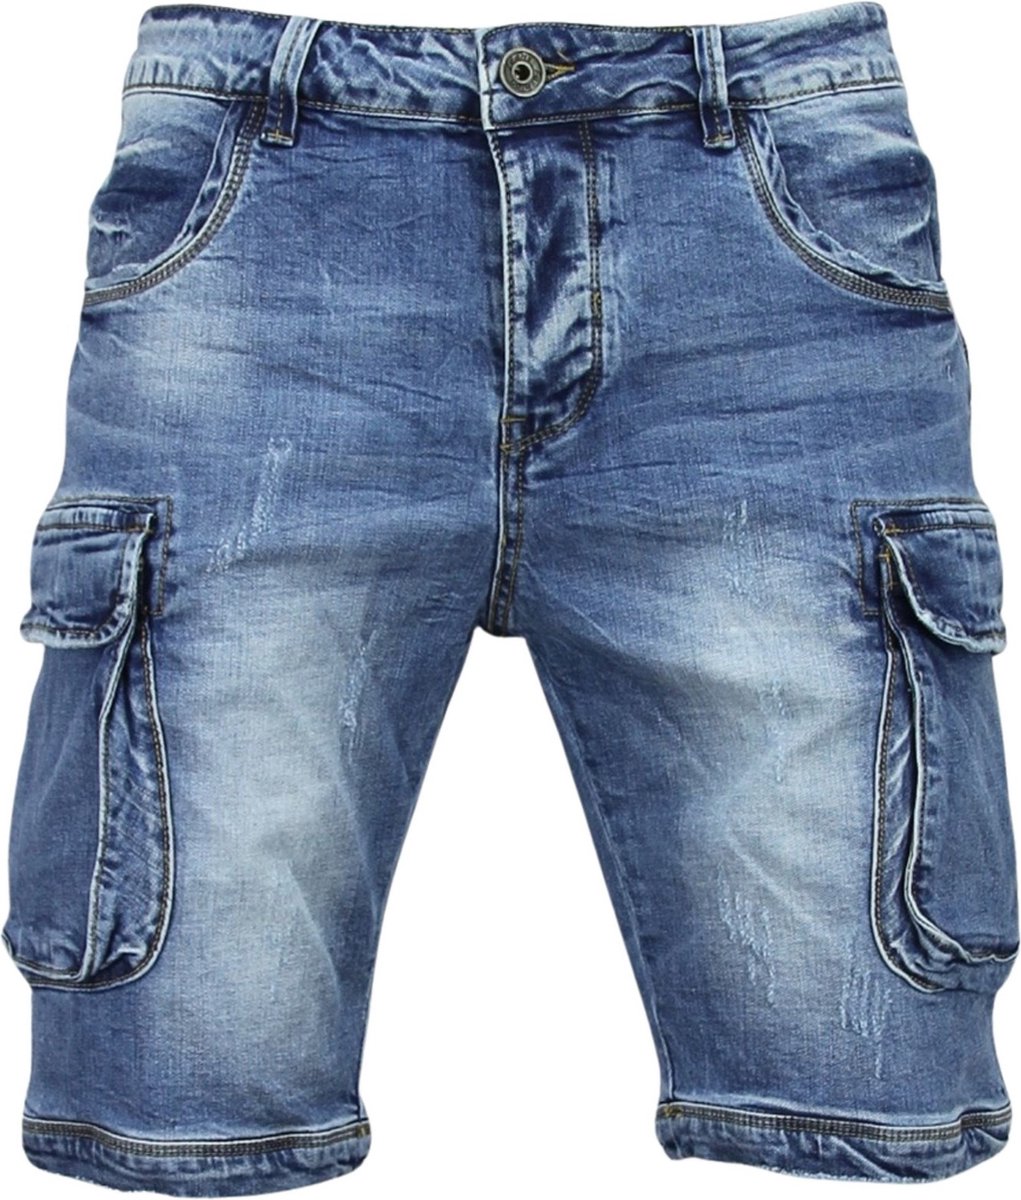 Korte Spijkerbroek Mannen - Shorts Heren Spijker -950 / J-981 - Blauw |  bol.com